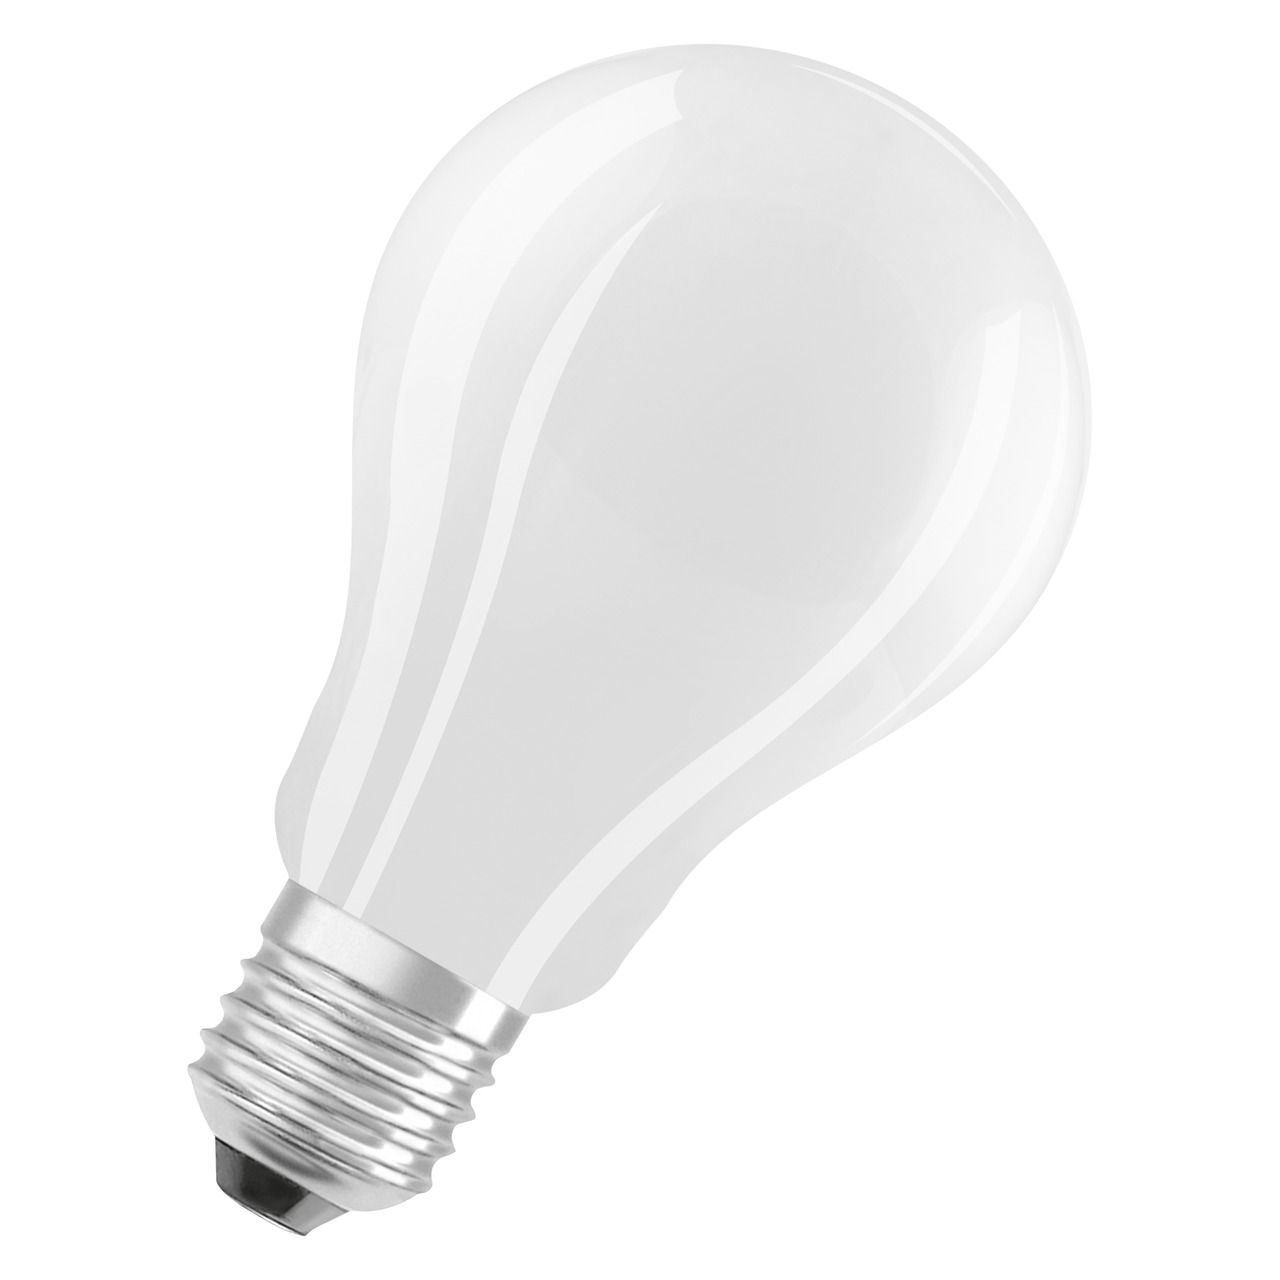 OSRAM 17-W-LED-Lampe A70- E27- 2452 lm- neutralweiss- matt unter Beleuchtung